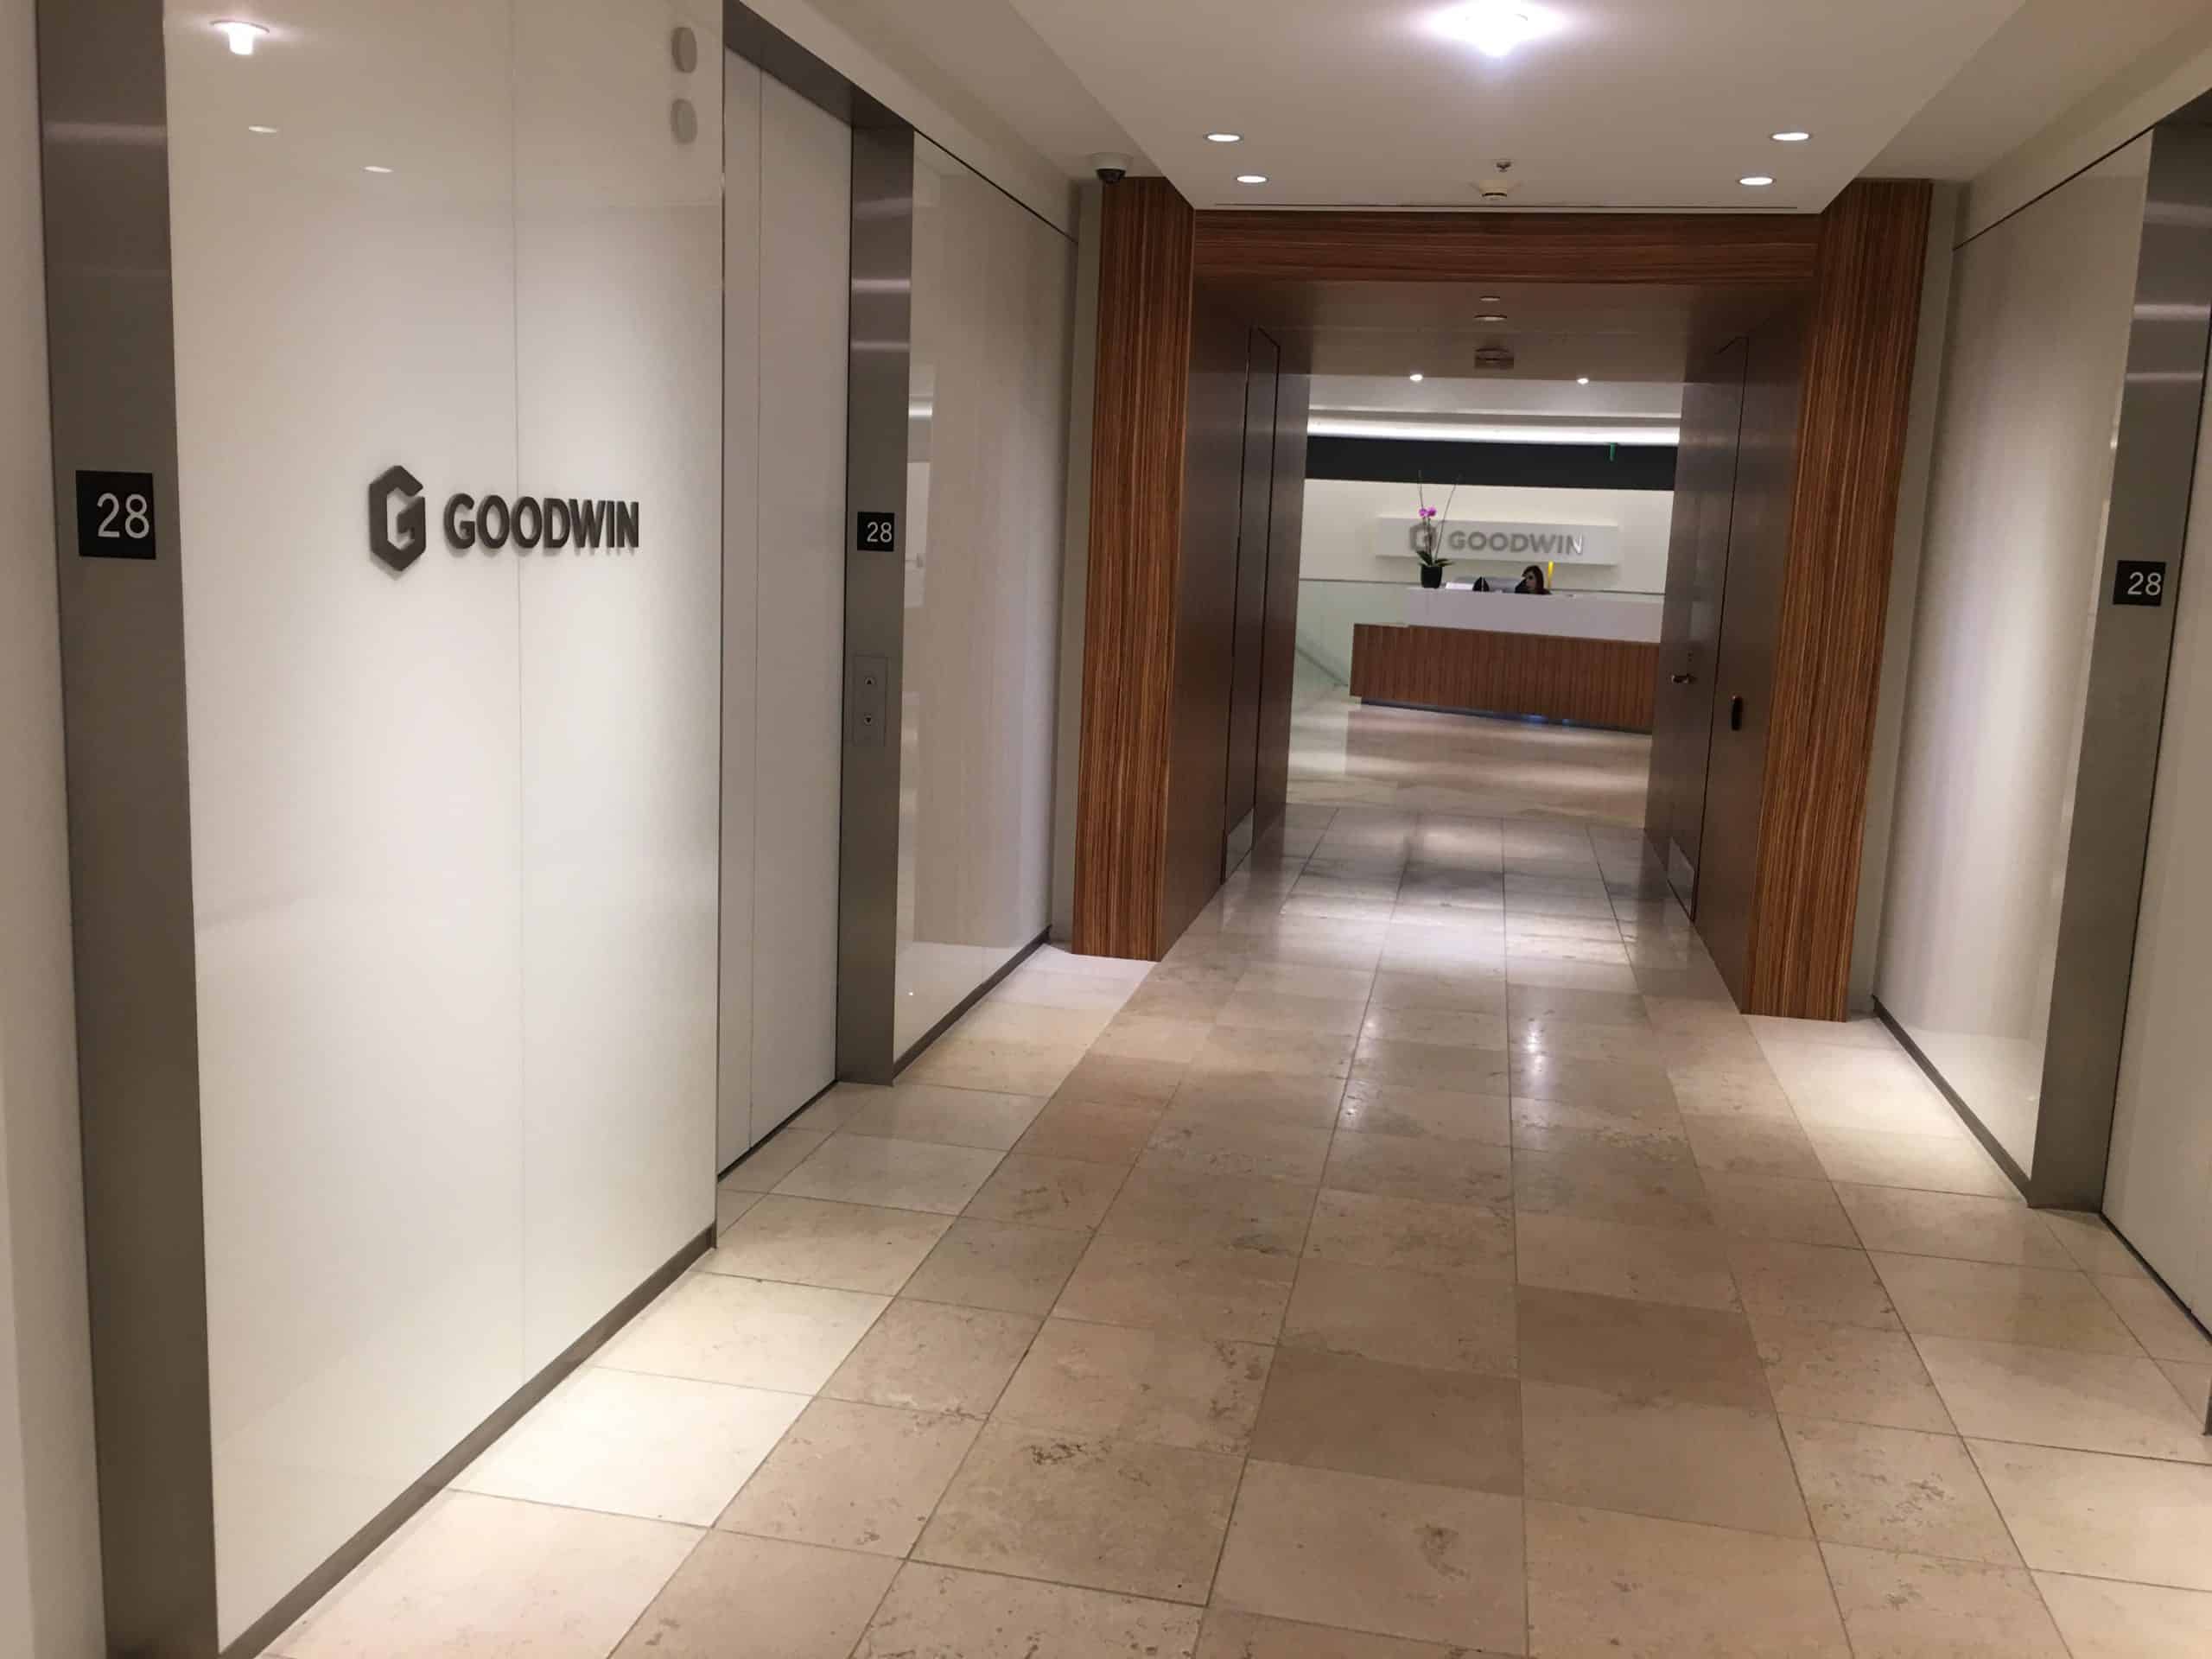 Goodwin Proctor offices - Paubox